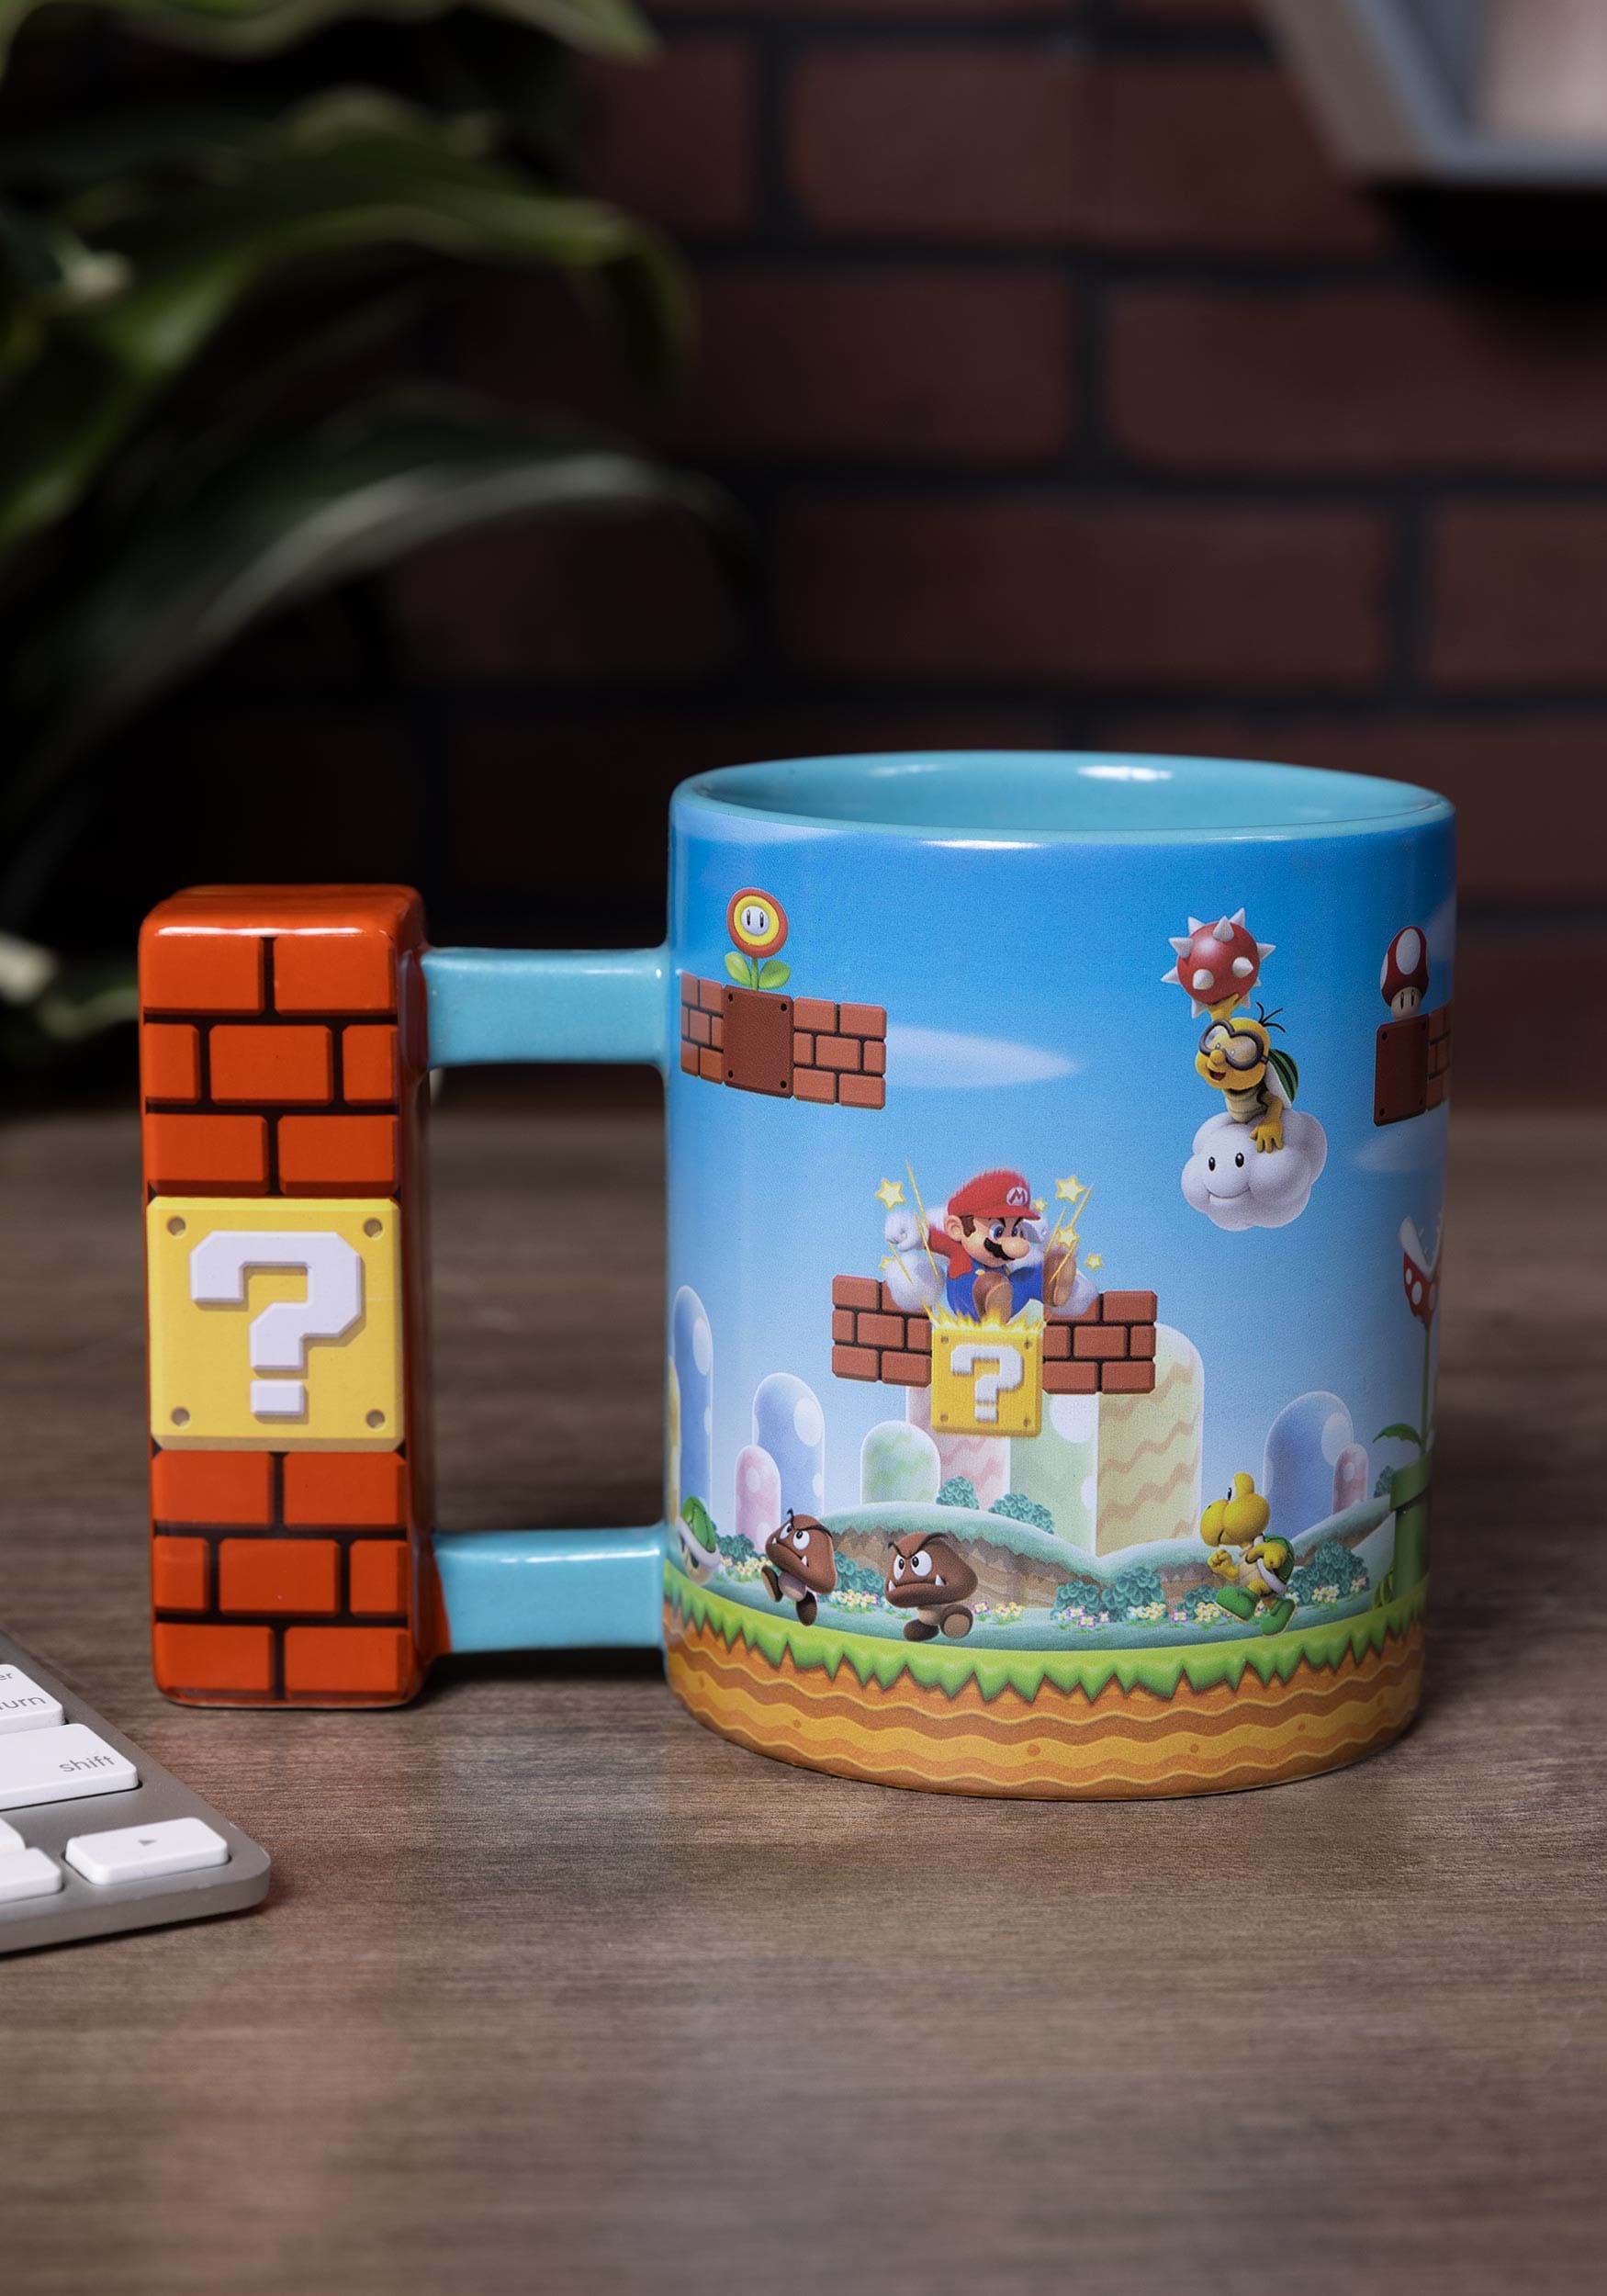 Super Mario - Mario and Friends 20oz Mug | GameStop